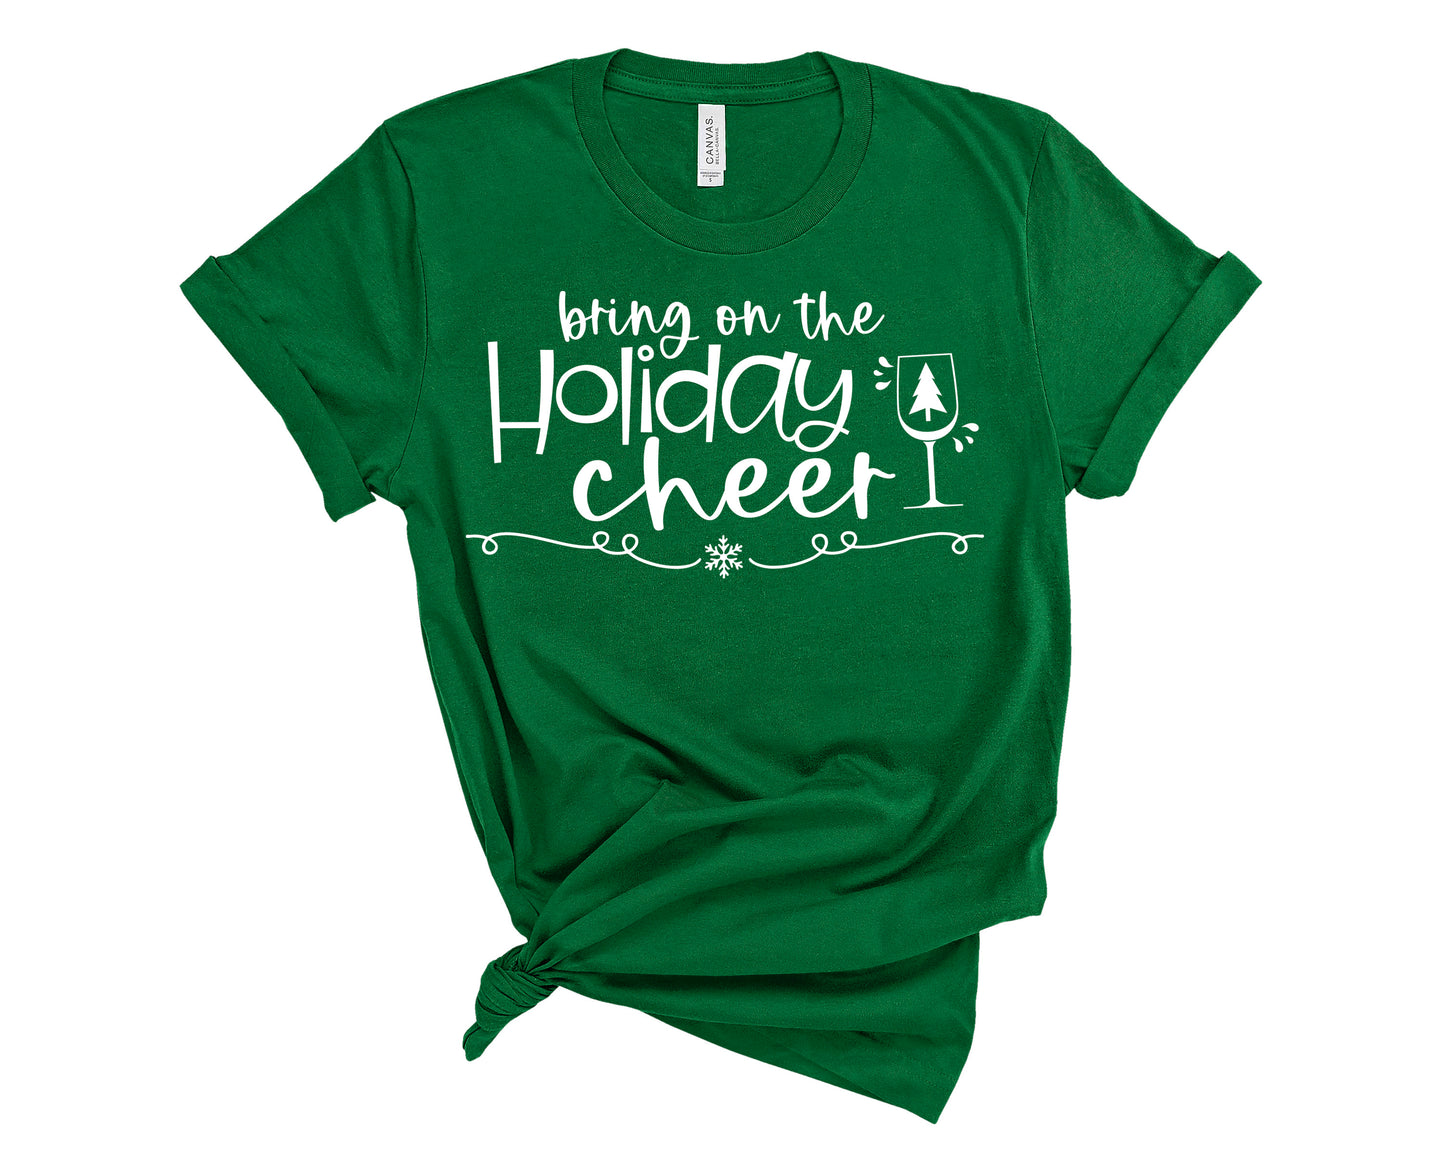 holiday cheer shirt